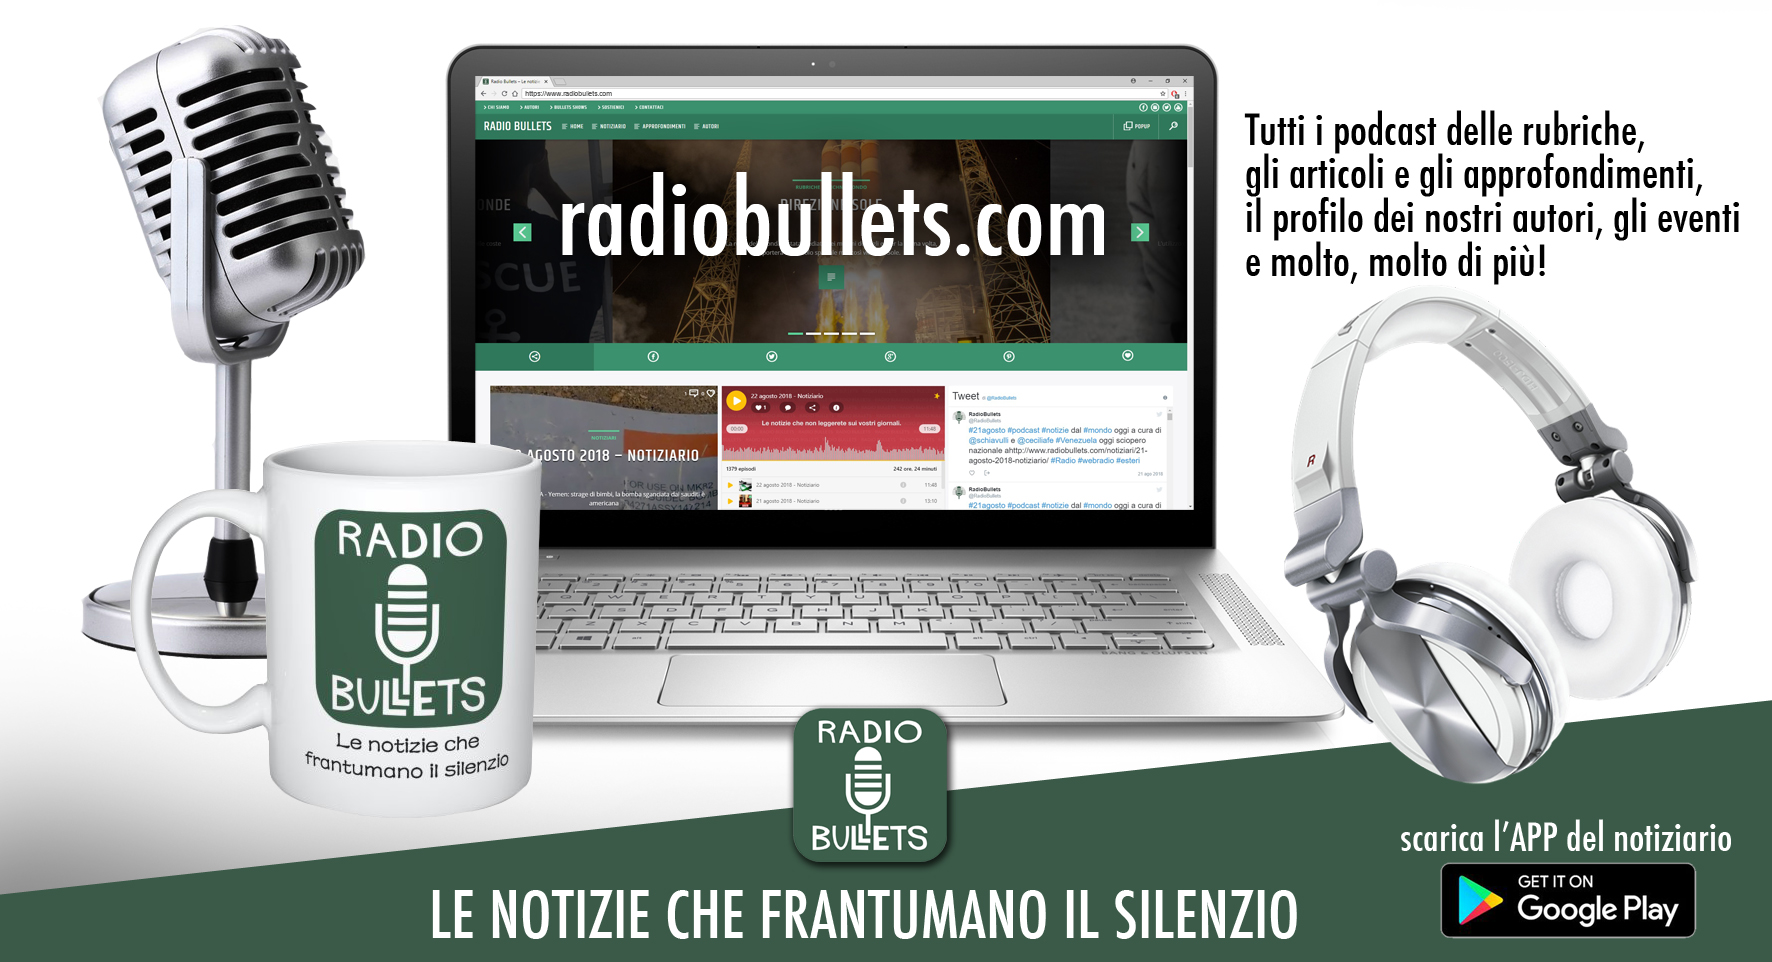 (c) Radiobullets.com